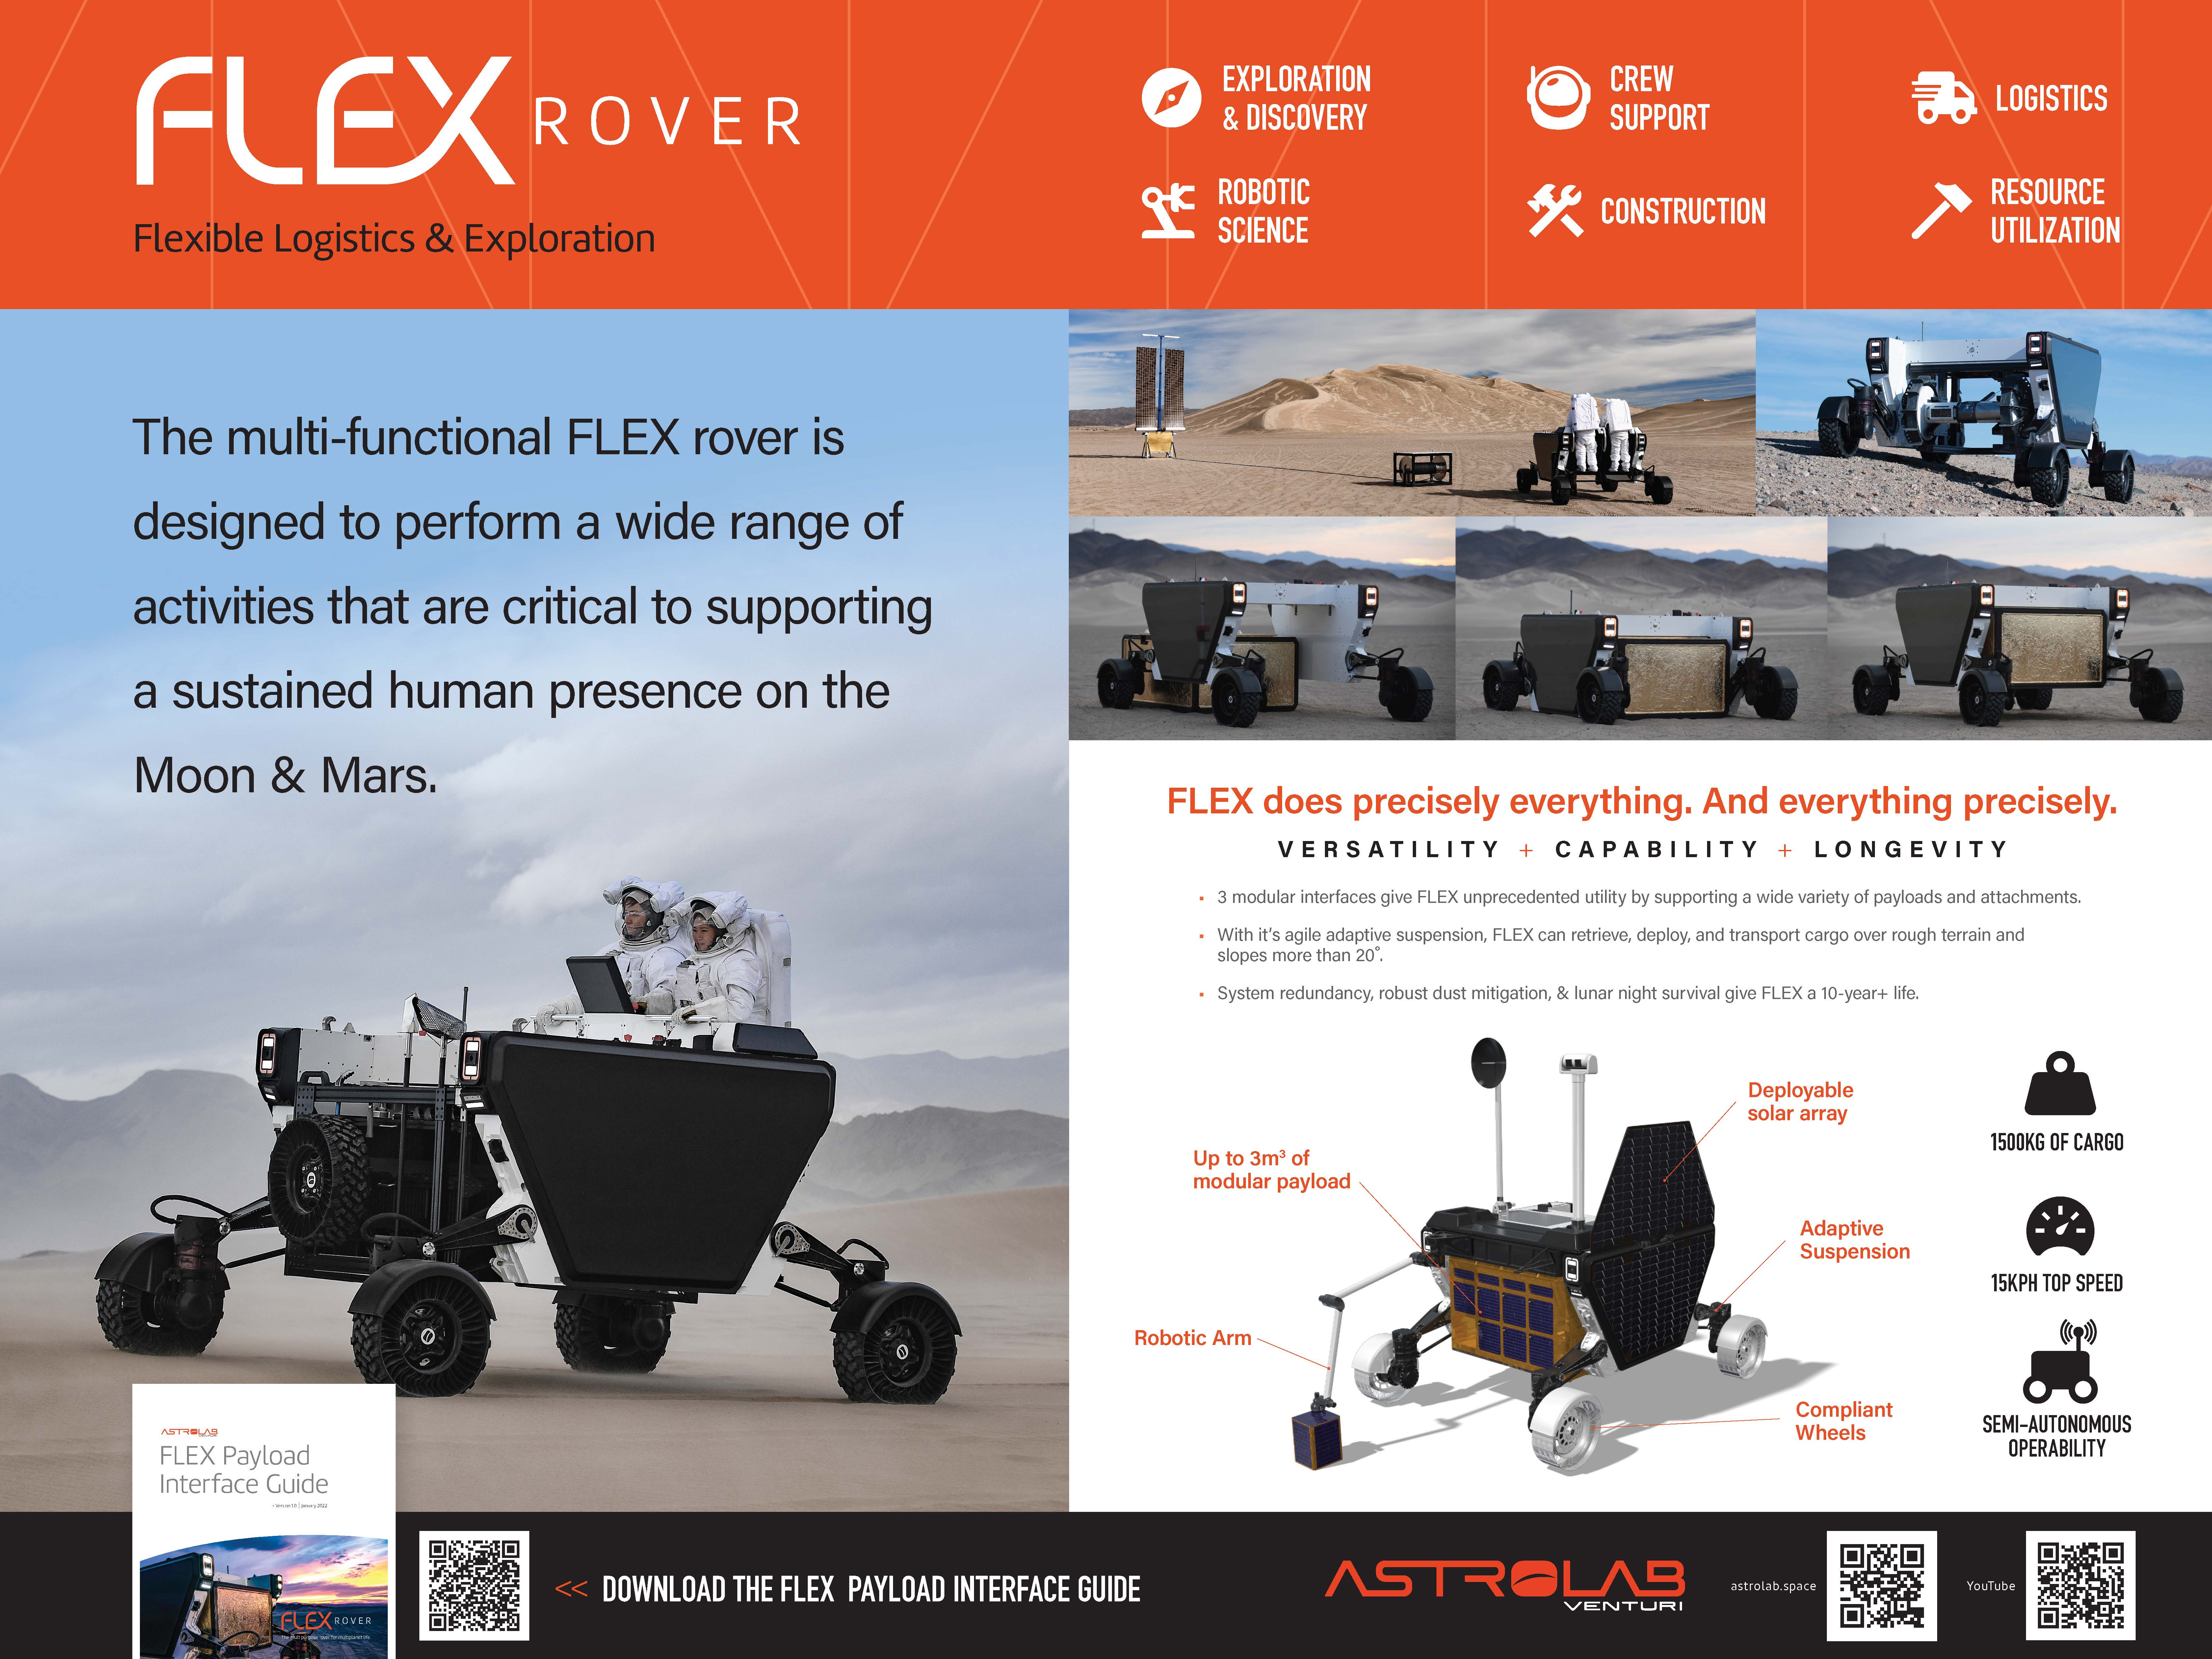 FLEX: Flexible Logistics & Exploration Rover